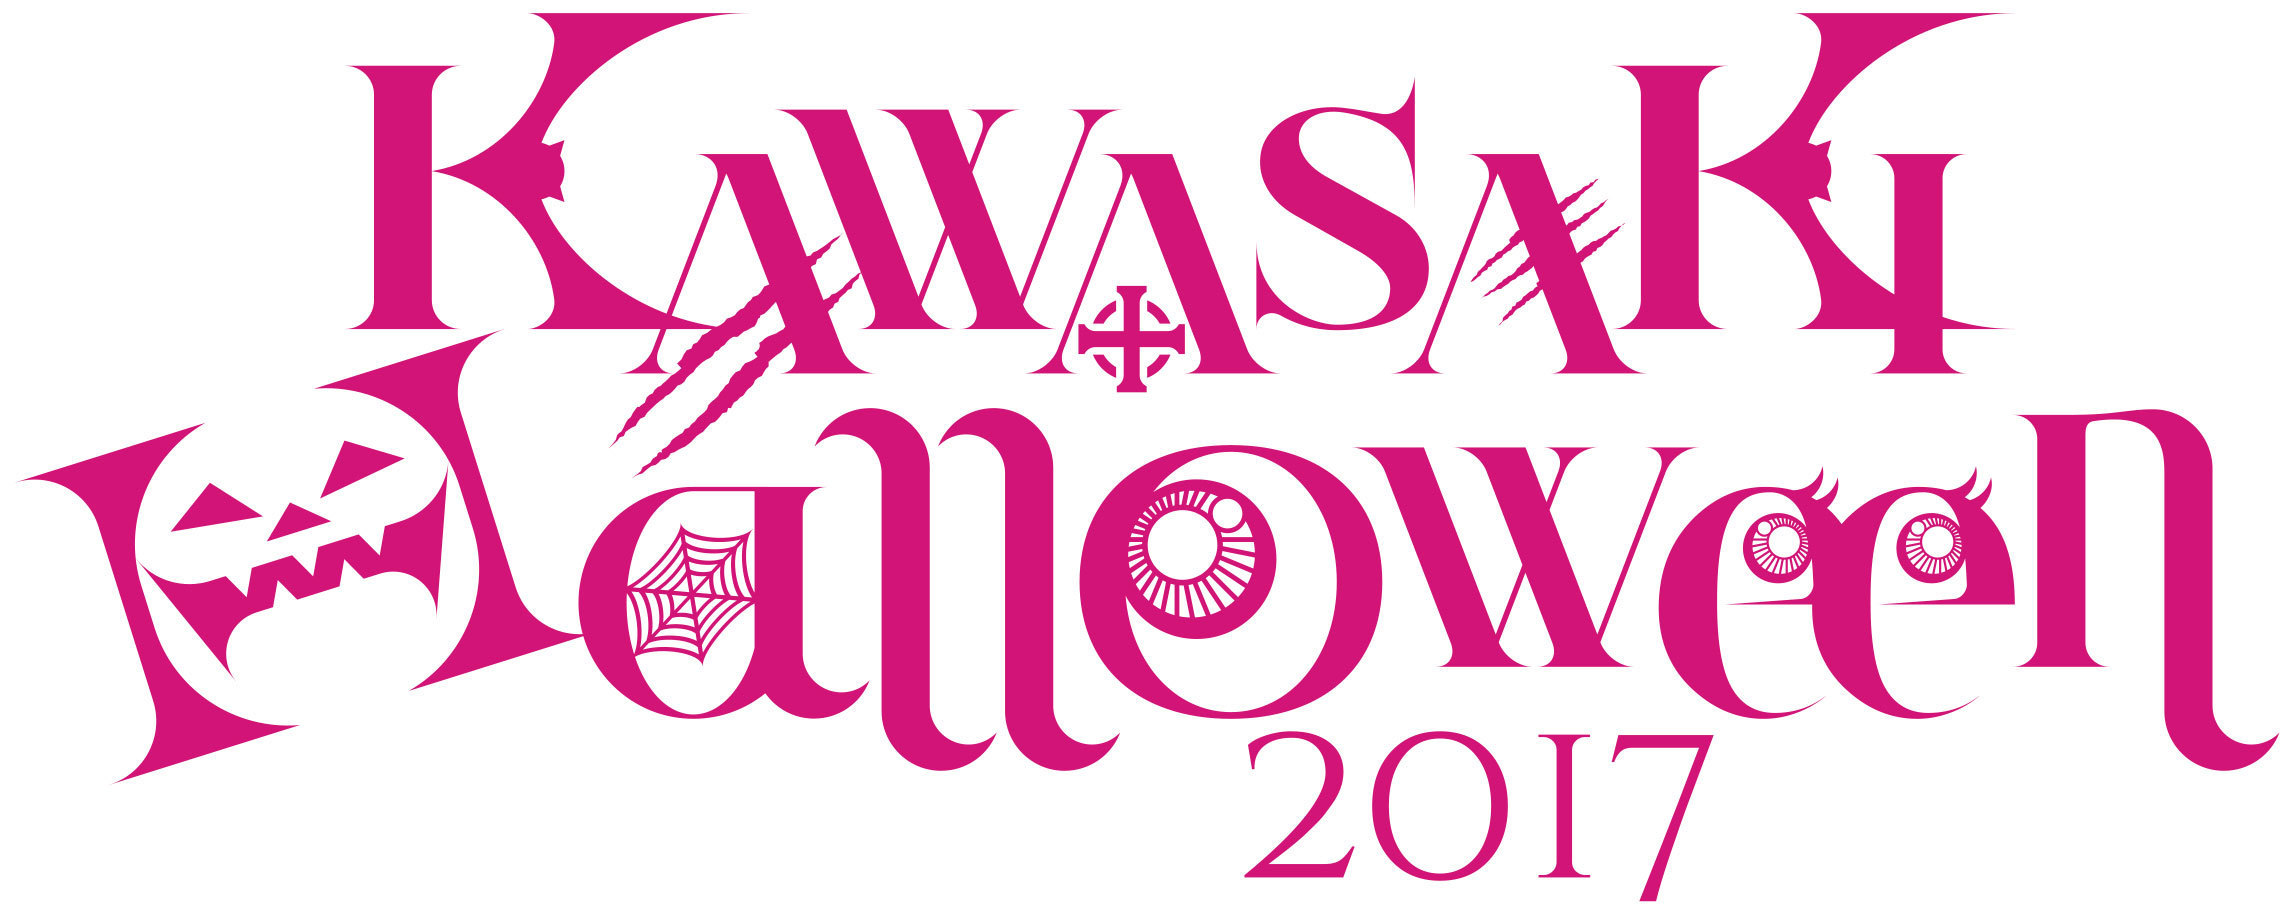 川崎ブレイブサンダースが国内最大規模のハロウィンイベント「カワサキハロウィン2017」とのコラボイベントを開催する